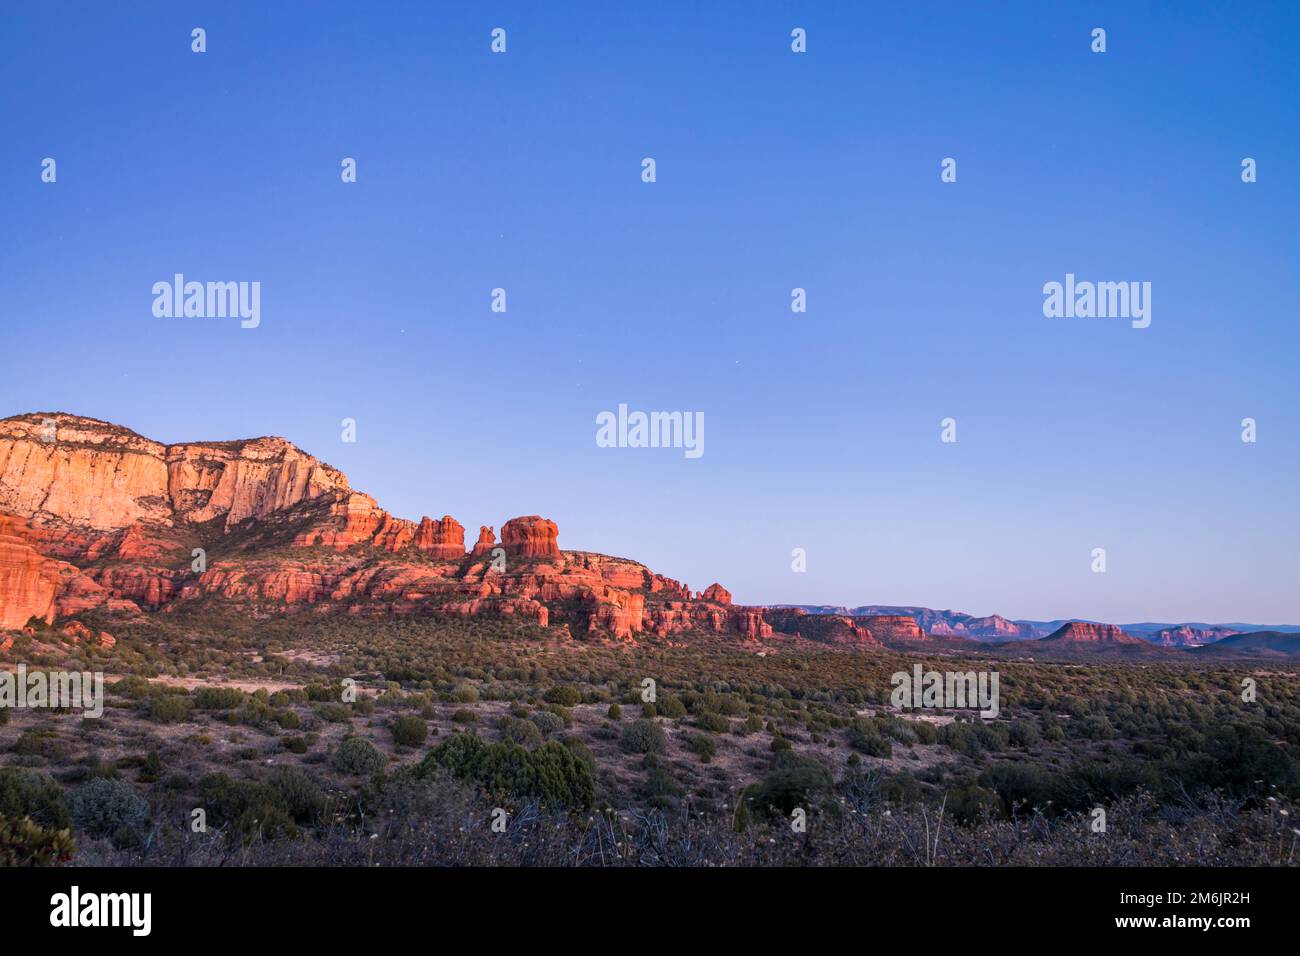 Al atardecer, Bear Mountain se puede ver en la distancia de Red Rock-Secret Mountain Wilderness, que se encuentra en el condado de Yavapai, Arizona. Foto de stock